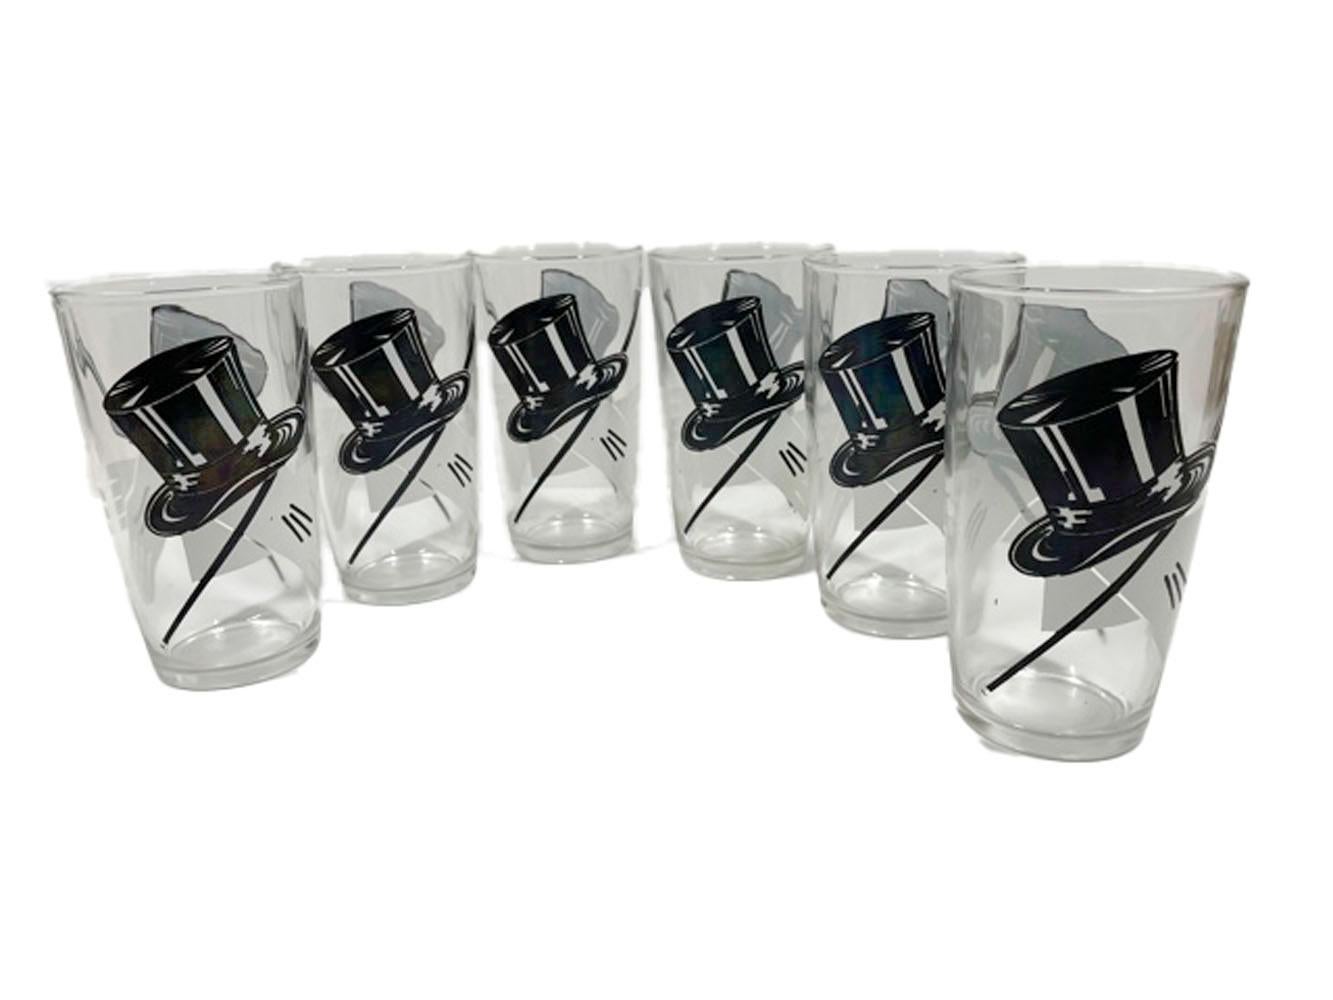 Ensemble de six verres highball Art Déco par Hazel Atlas décorés de chapeaux haut de forme, de gants blancs et de cannes en émail noir et blanc sur verre transparent.